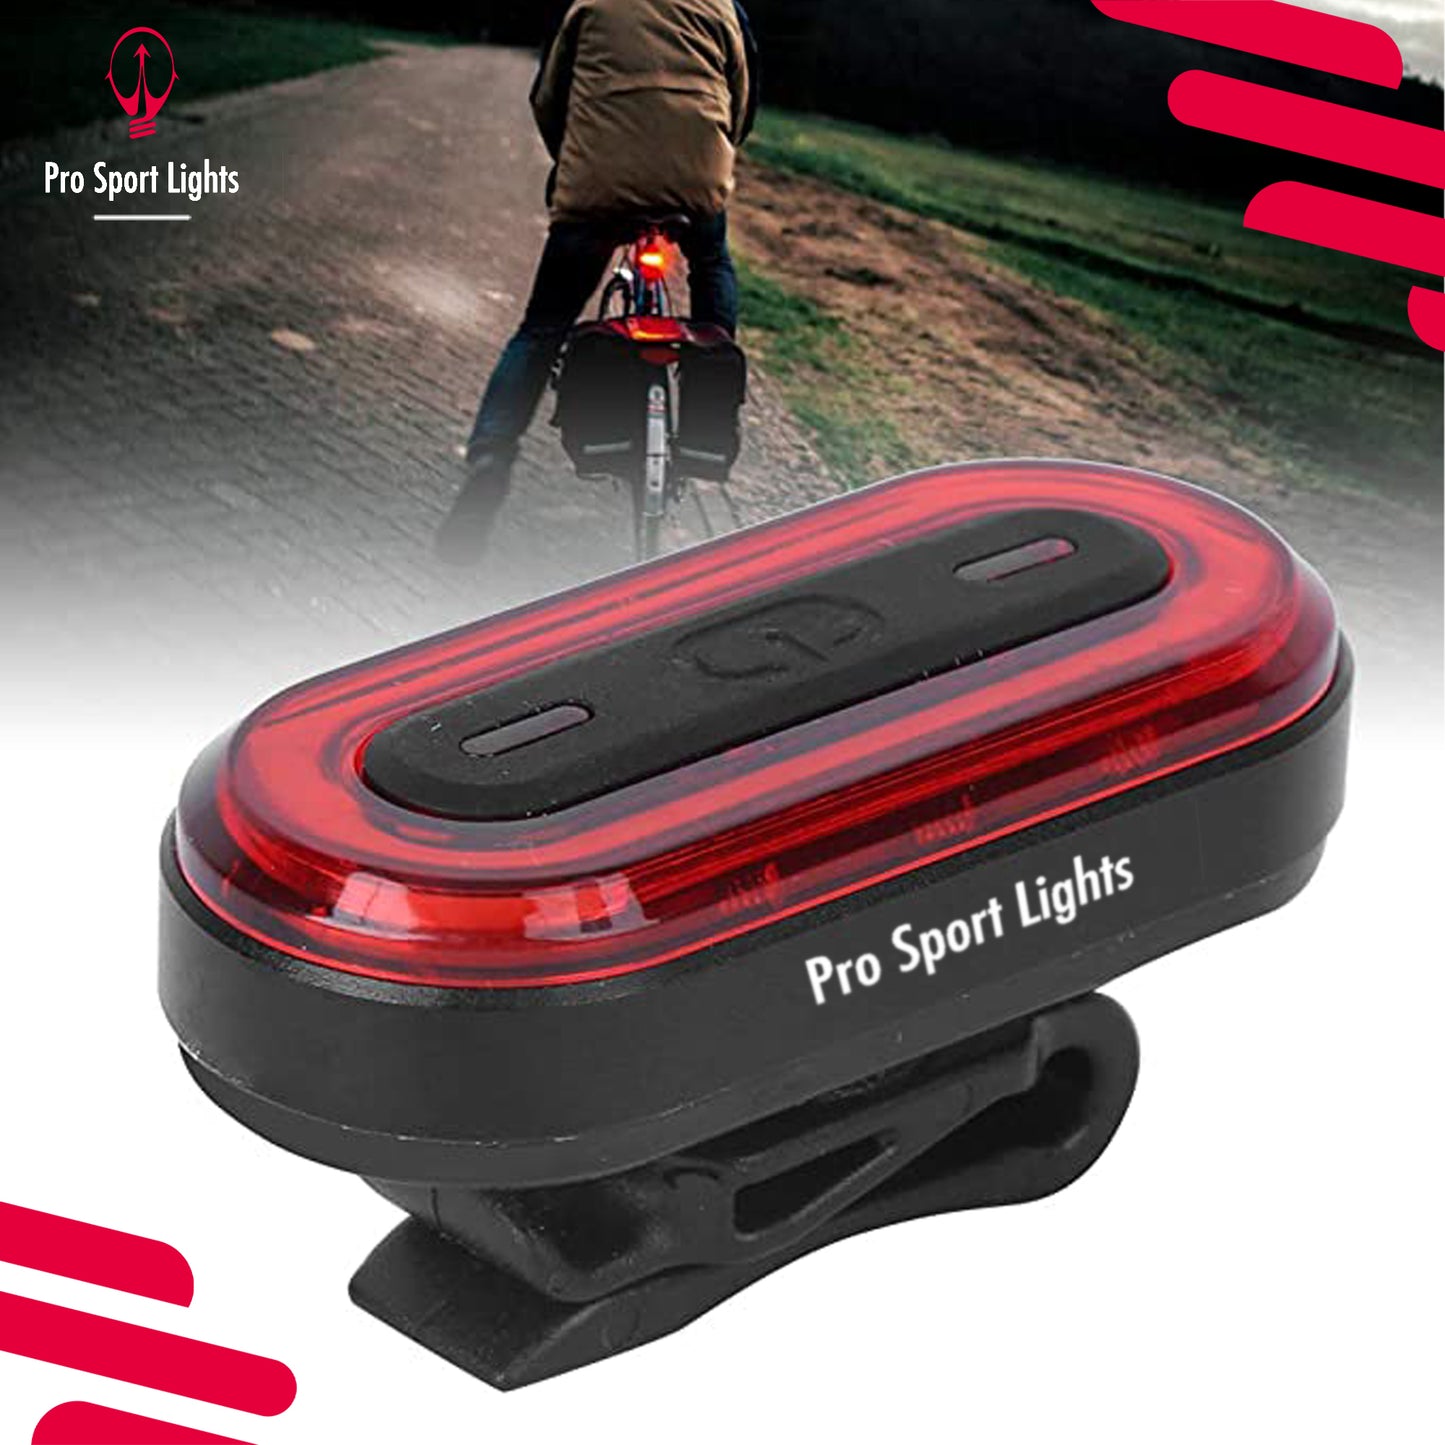 Fietsverlichtingsset Pro Sport Lights - 1200 & 100 Lumen - USB Oplaadbaar